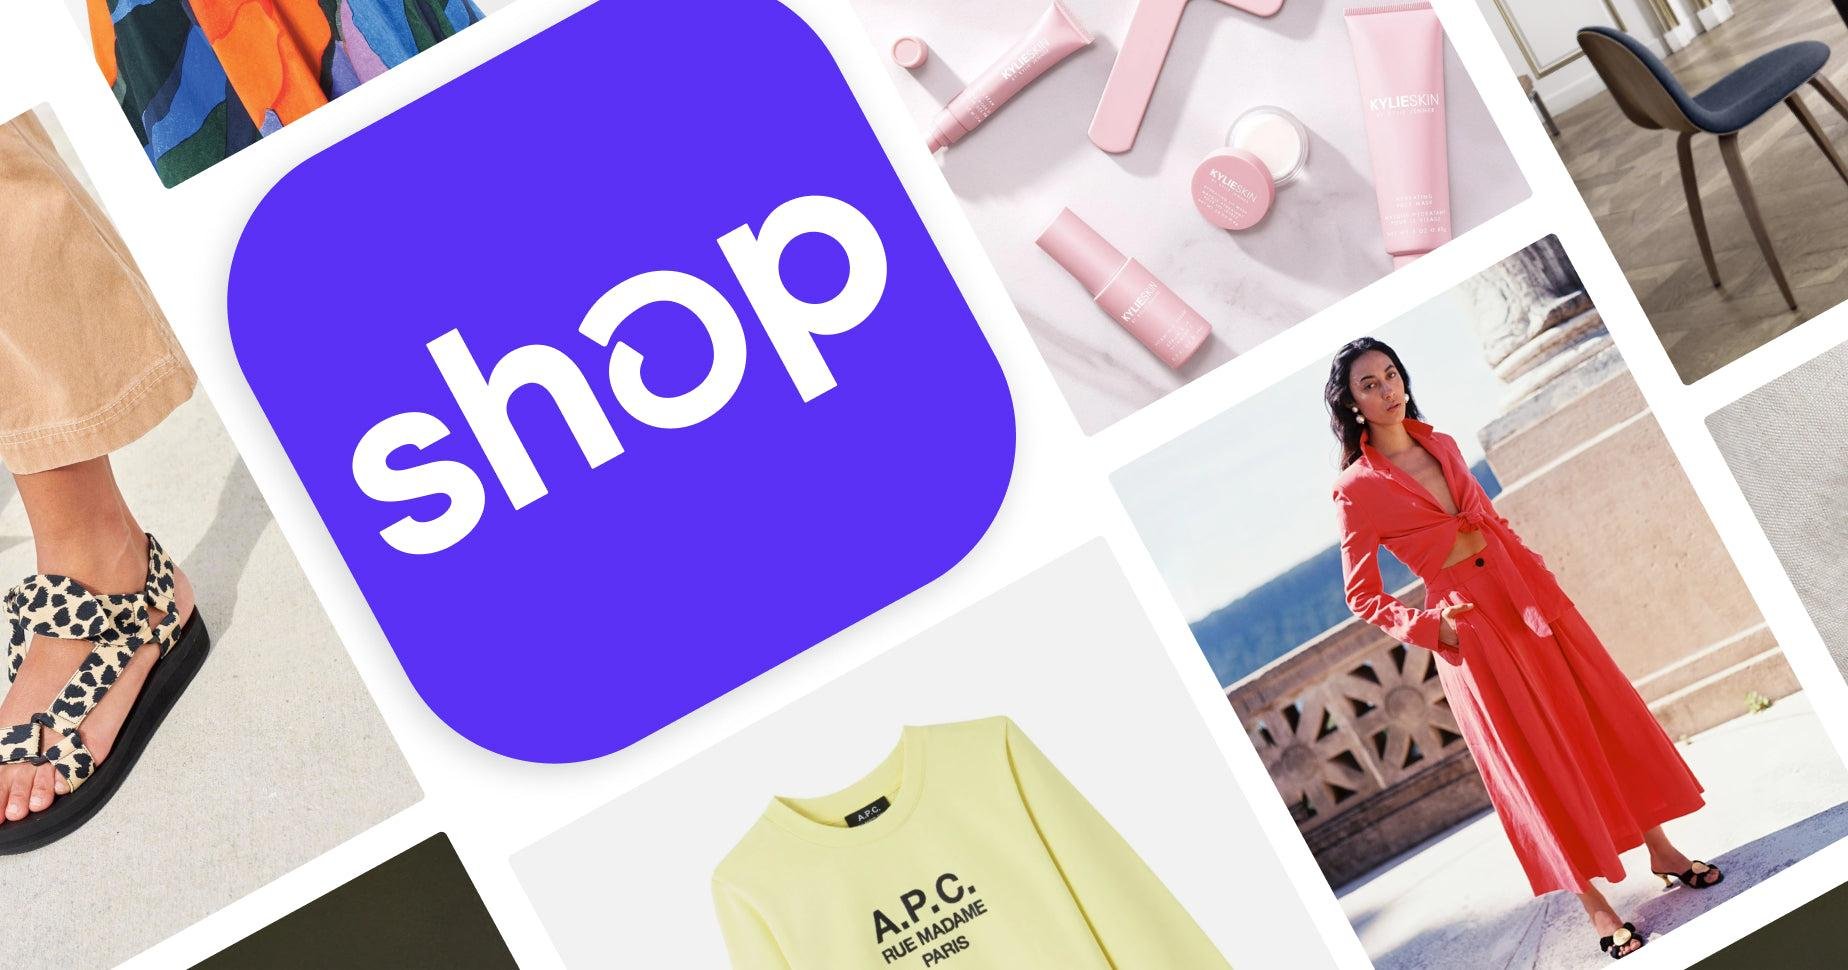 Assistente virtual de compras da Shopify é alimentado por API integrada com ChatGPT. (Fonte: Shopify/Reprodução)